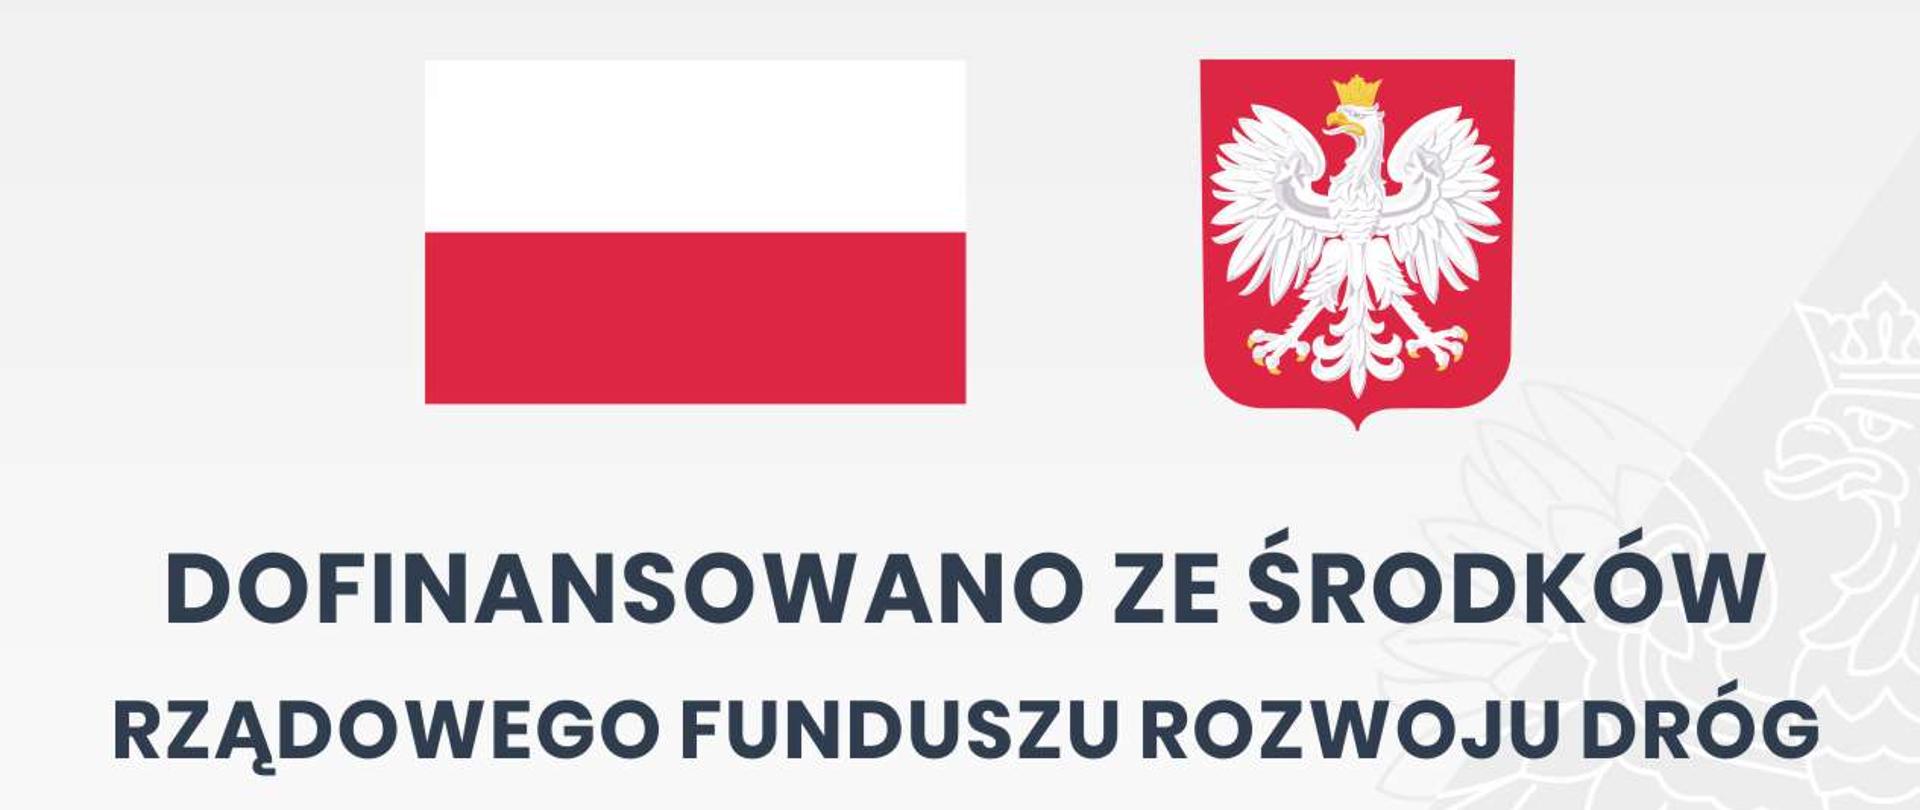 Tablica informacyjna inwestycji zrealizowanej dzięki dofinansowaniu ze Środków Rządowego Funduszu Rozwoju Dróg - nazwa zadania, kwota dofinansowania, wartość inwestycji, flaga i godło Polski